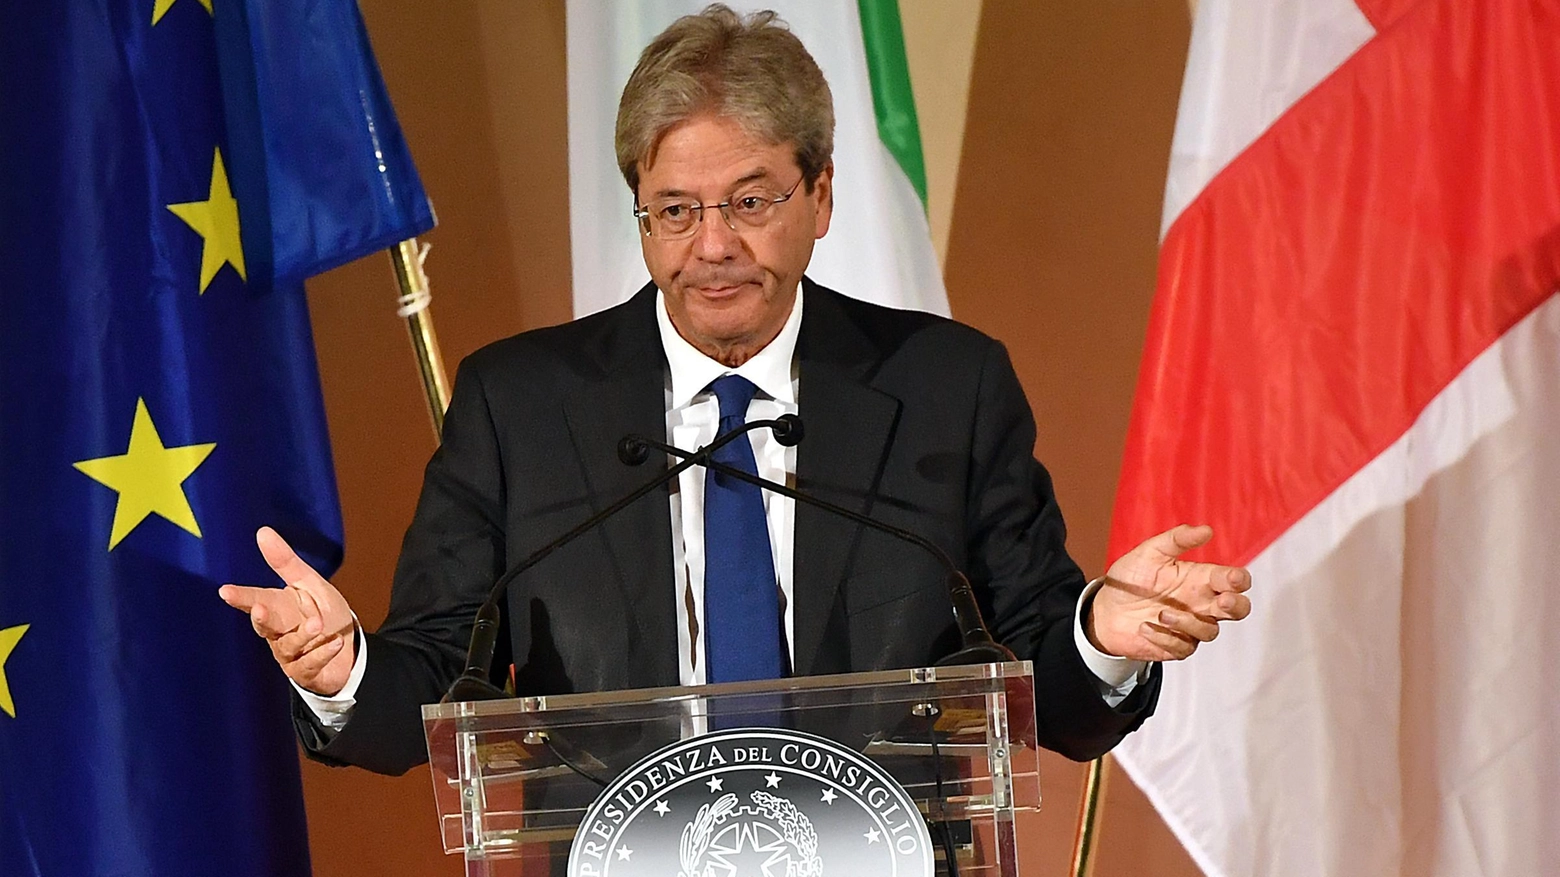 Il presidente del Consiglio Paolo Gentiloni (La Presse)